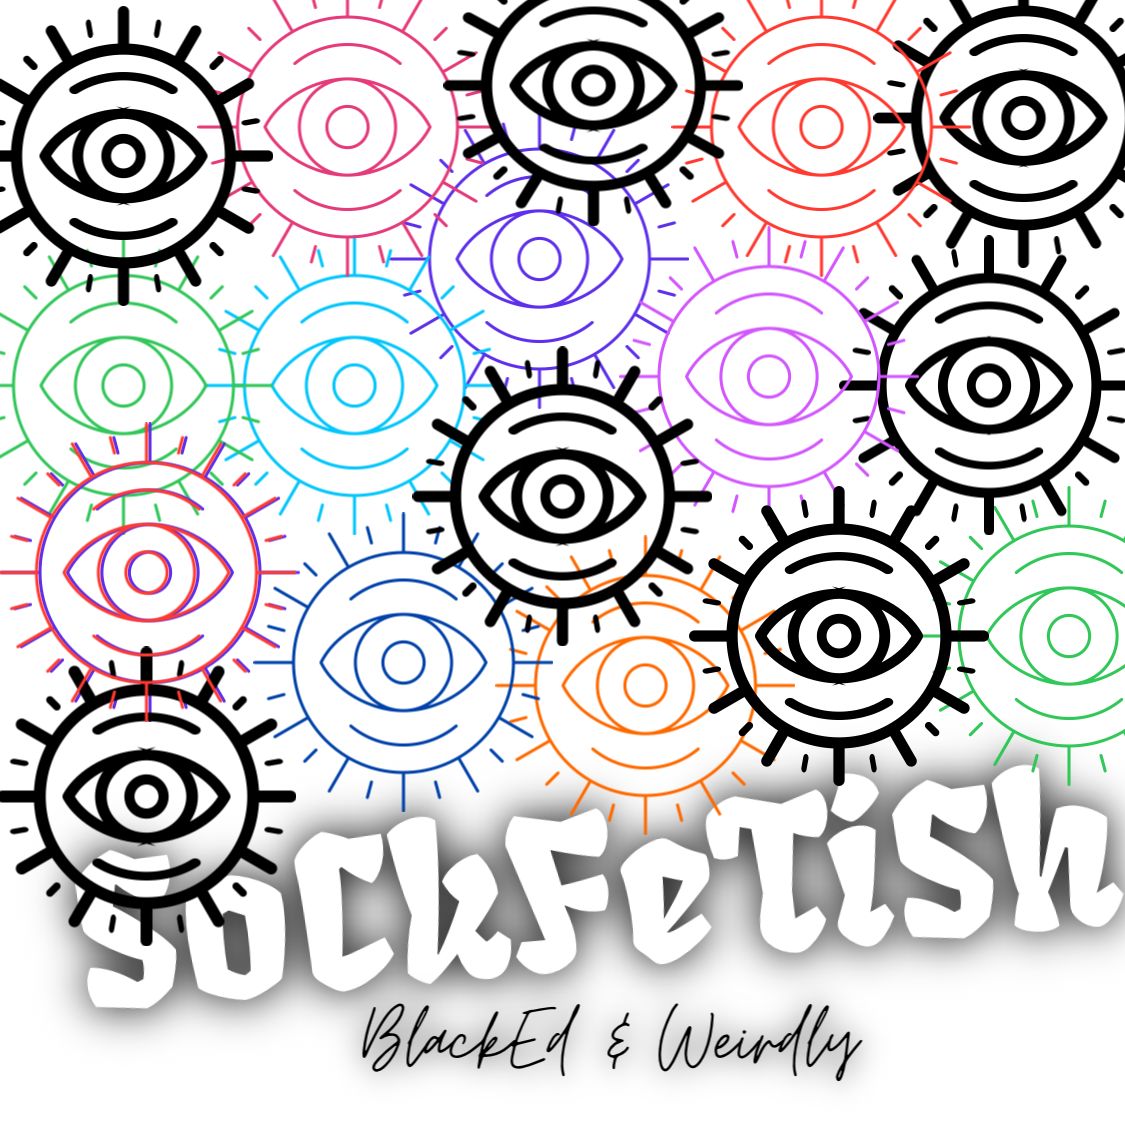 Sockfetish